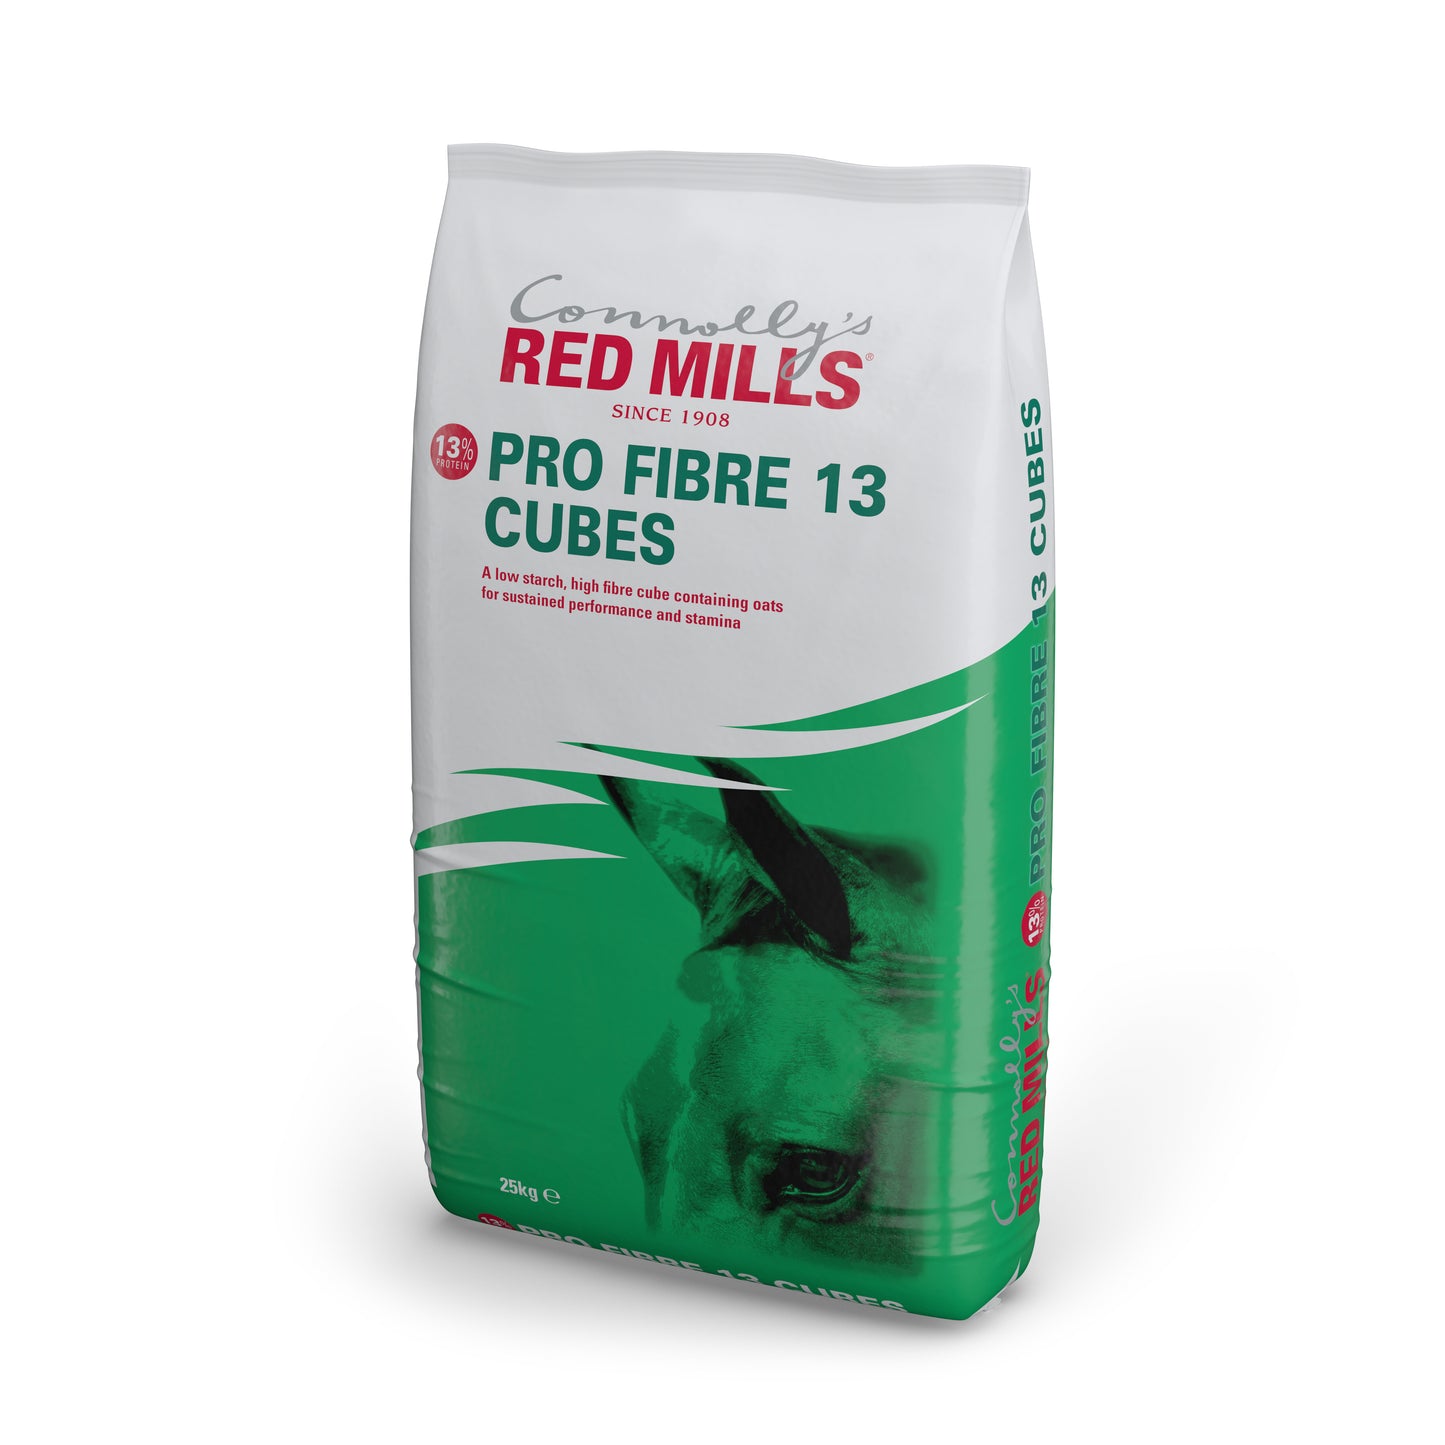 Red Mills Pro Fibre 13 Cubes